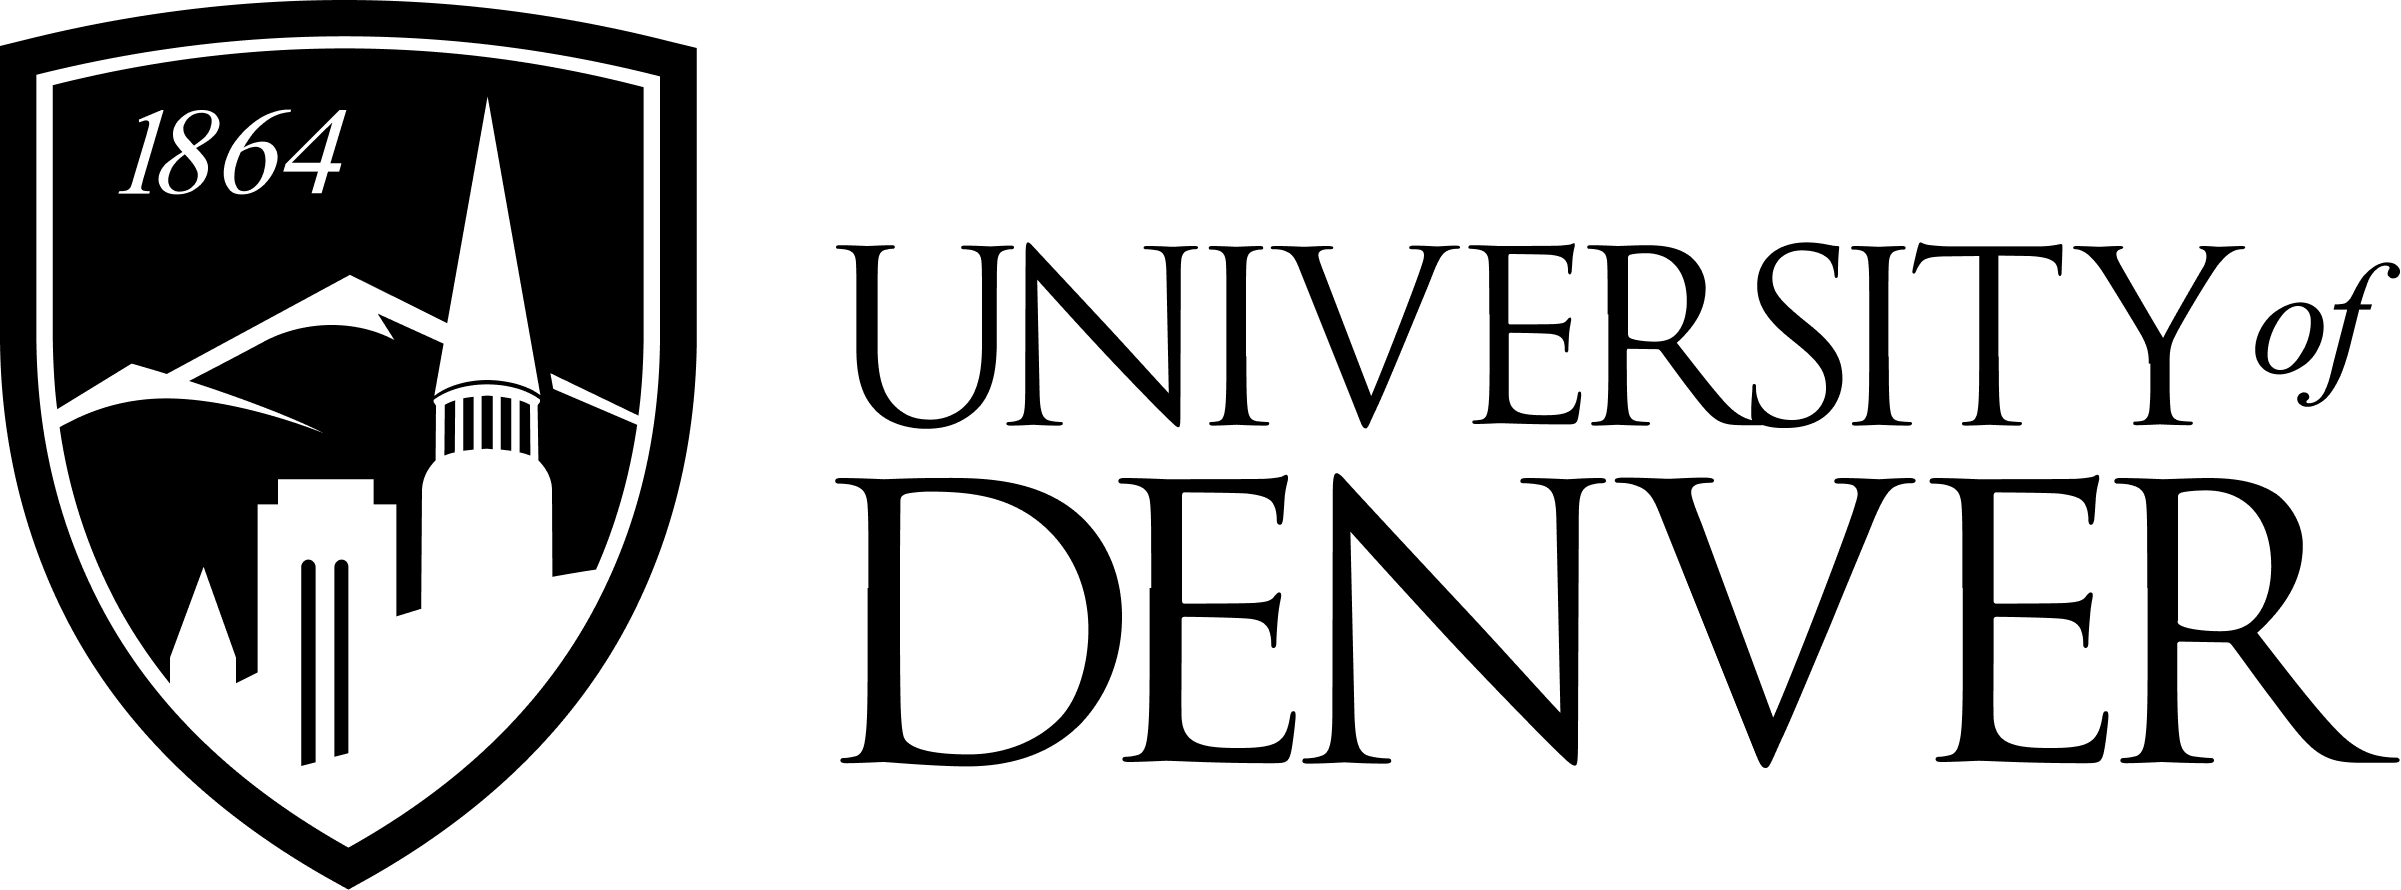 University of Denver